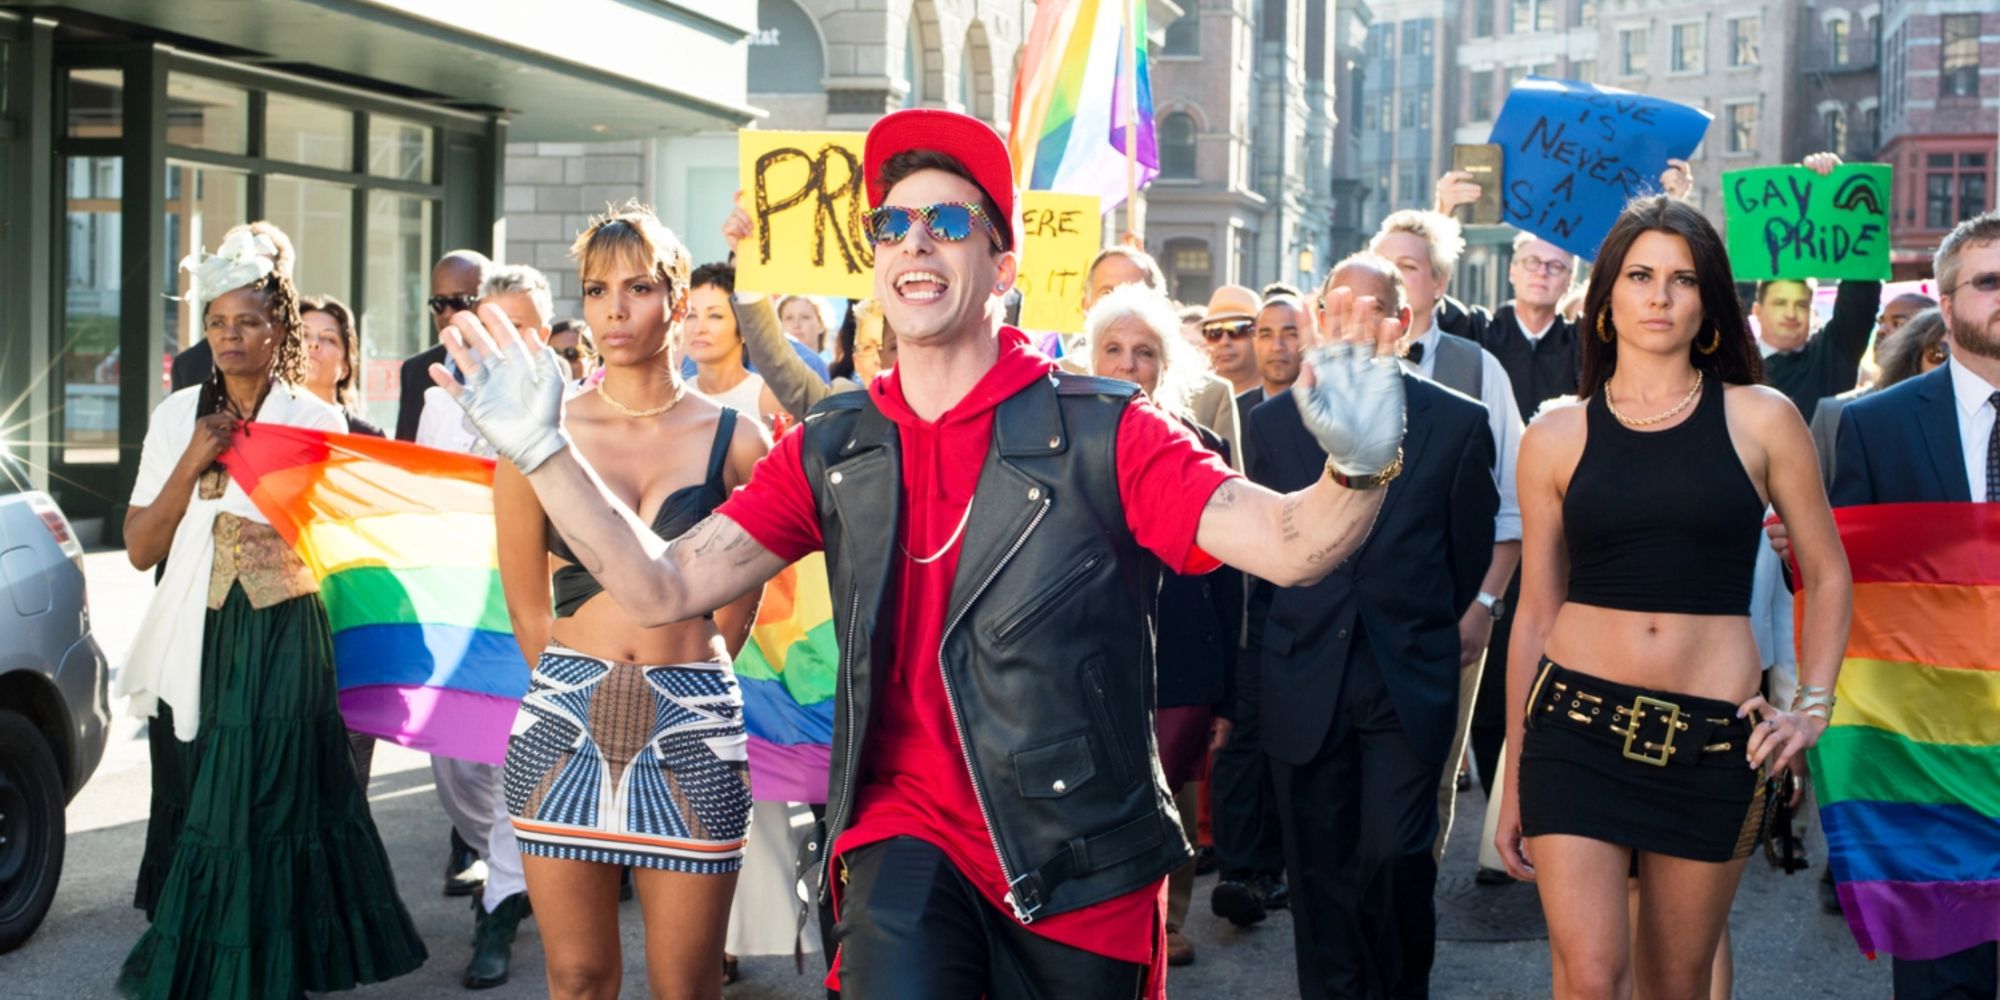 Andy Samberg during a pride parade singing 